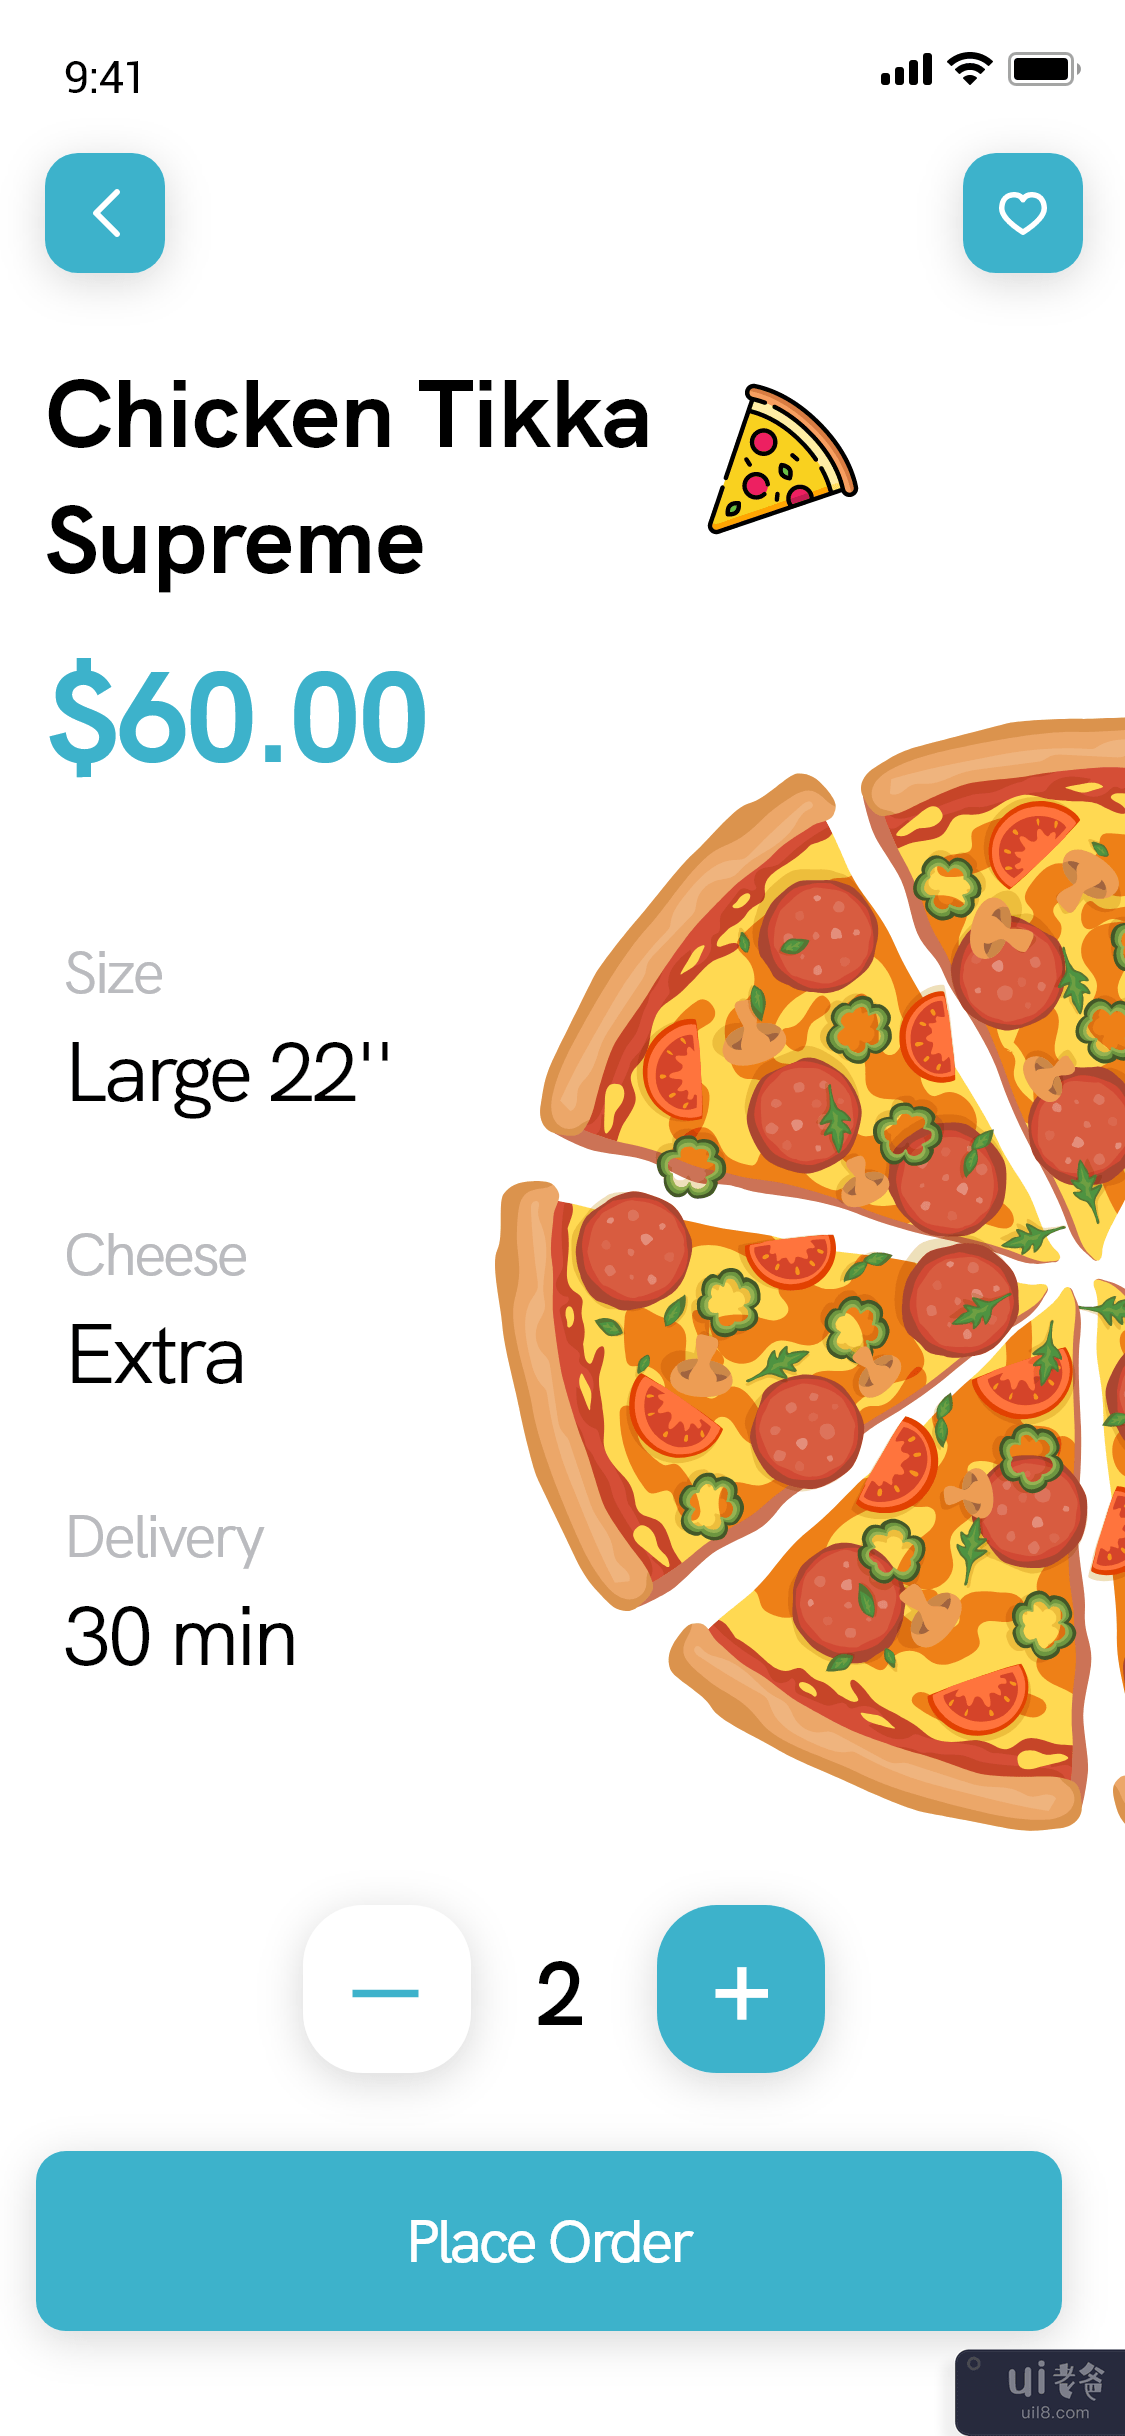 比萨配送应用程序 - 食品配送应用程序(Pizza Delivery app - Food Delivery App)插图1